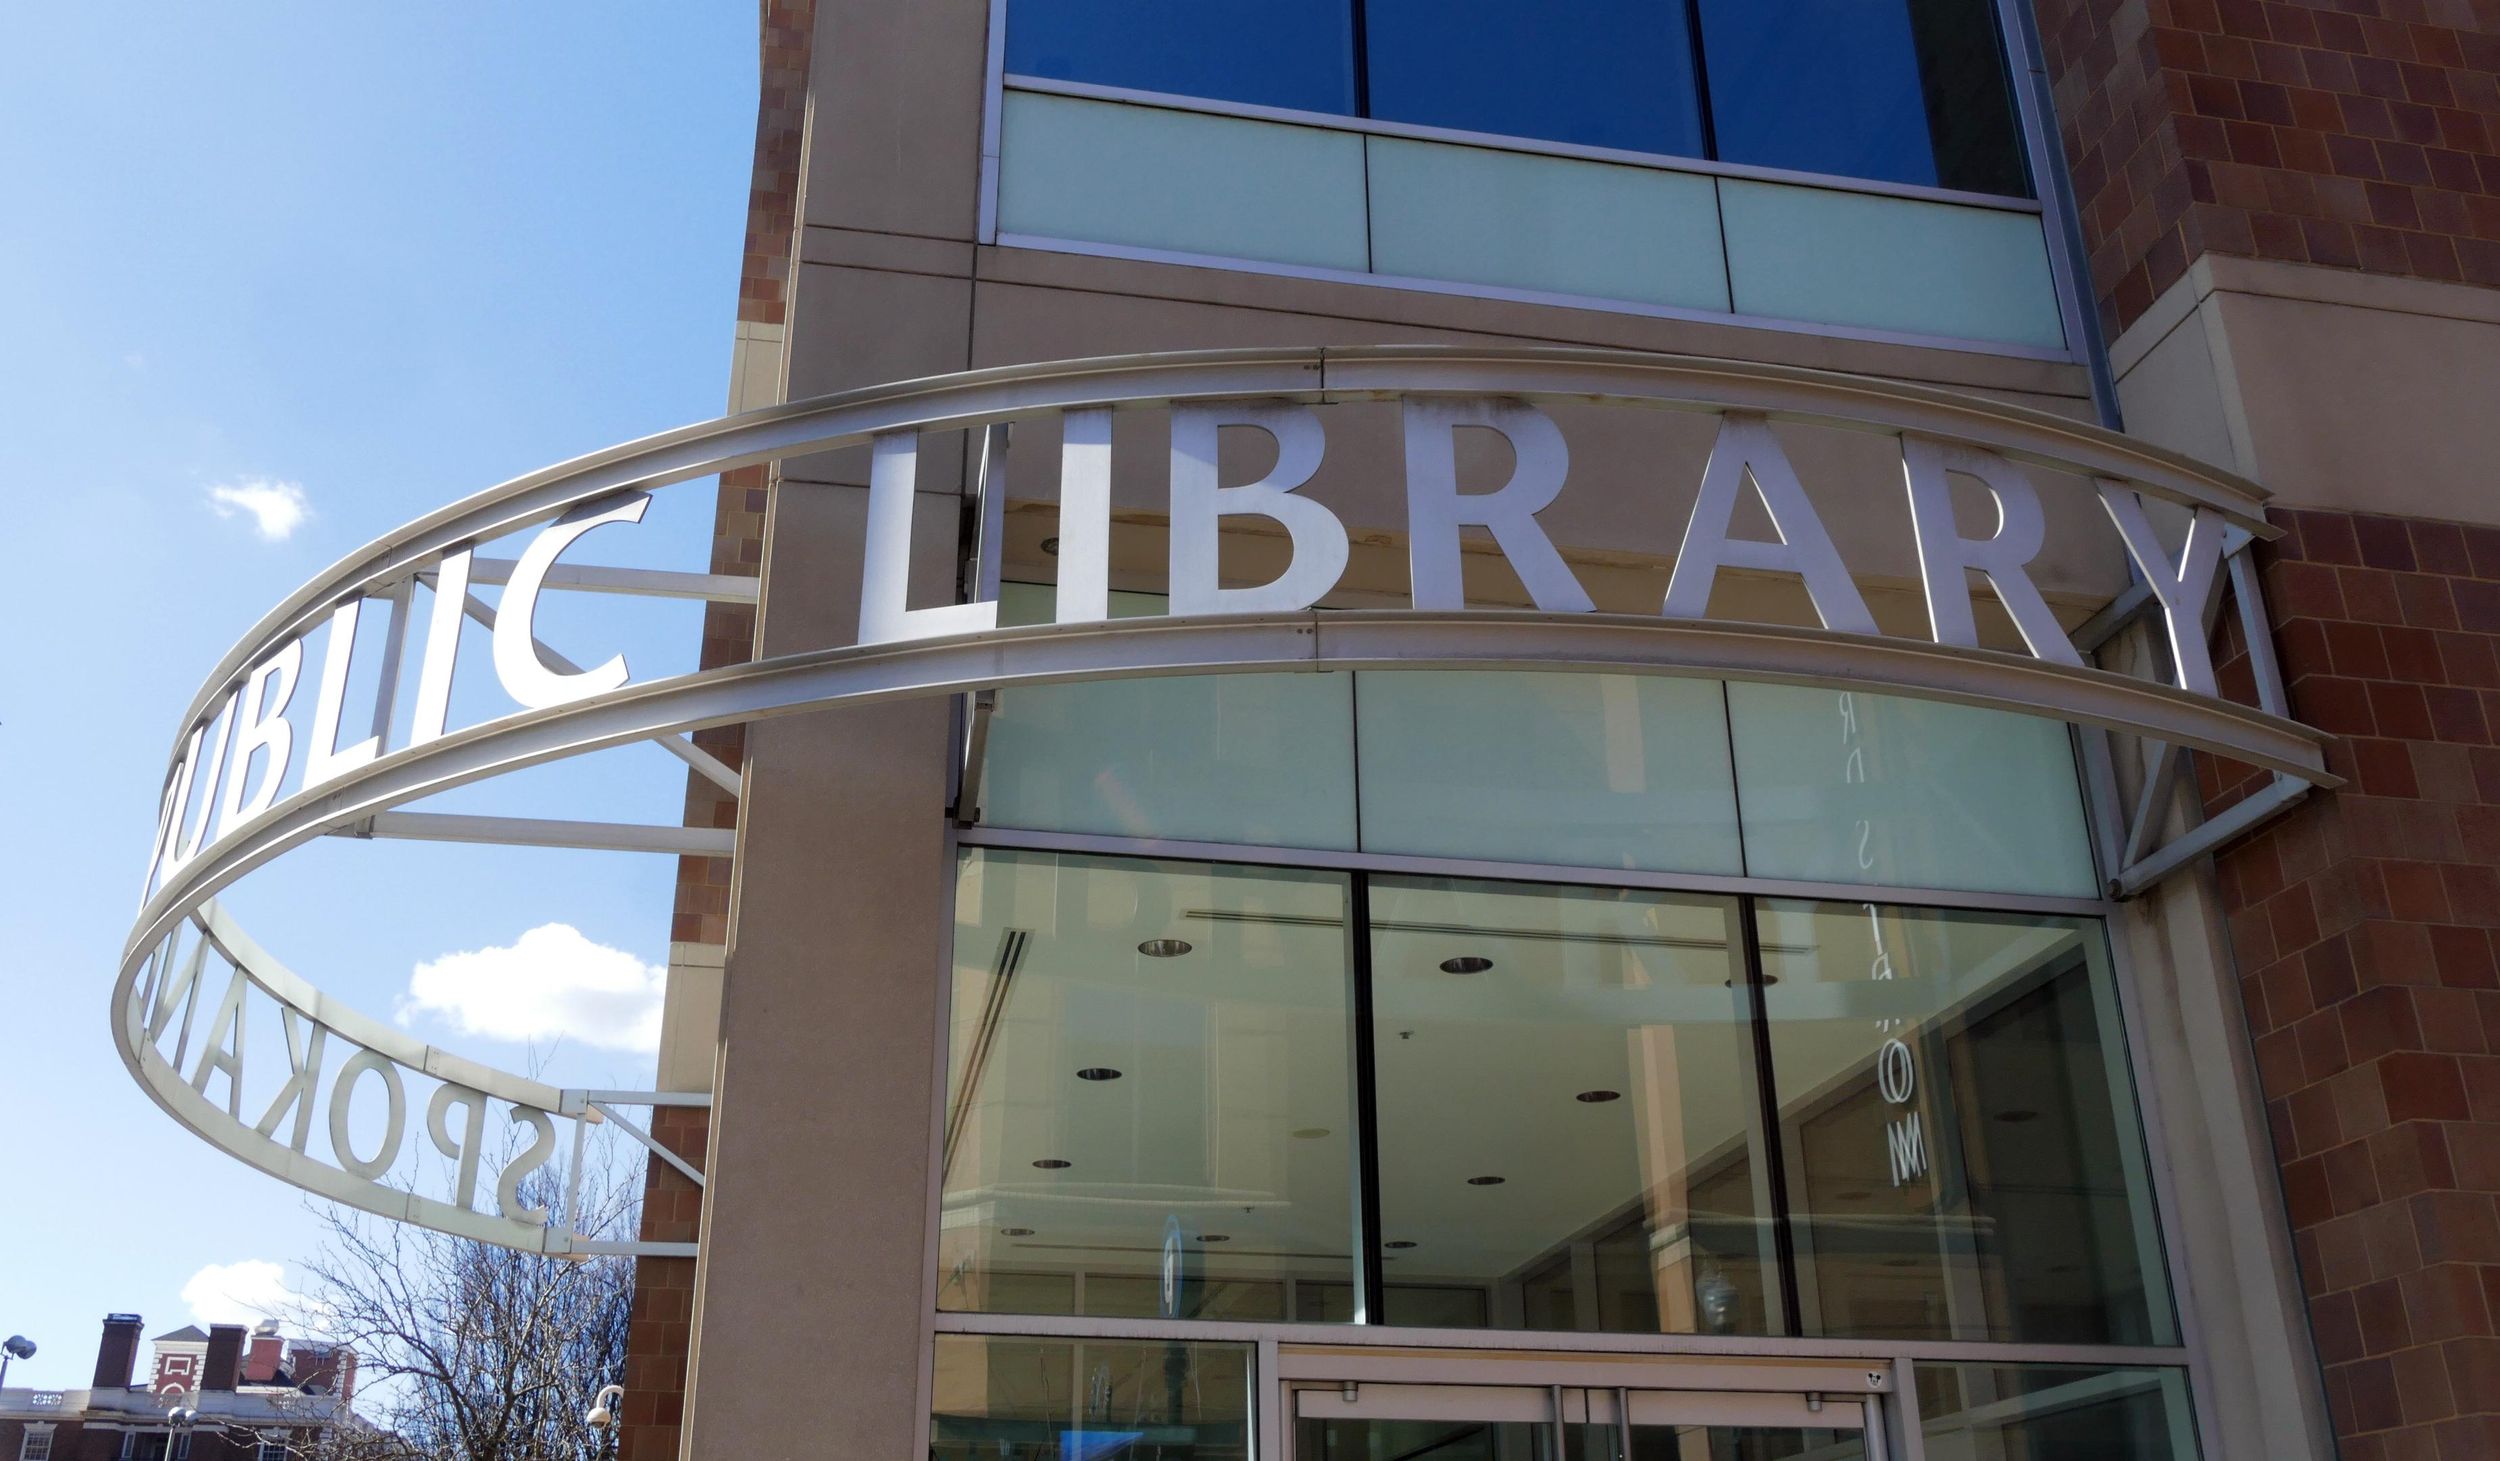 Fairgrounds, Spokane Public Library eyed for shelter in coronavirus